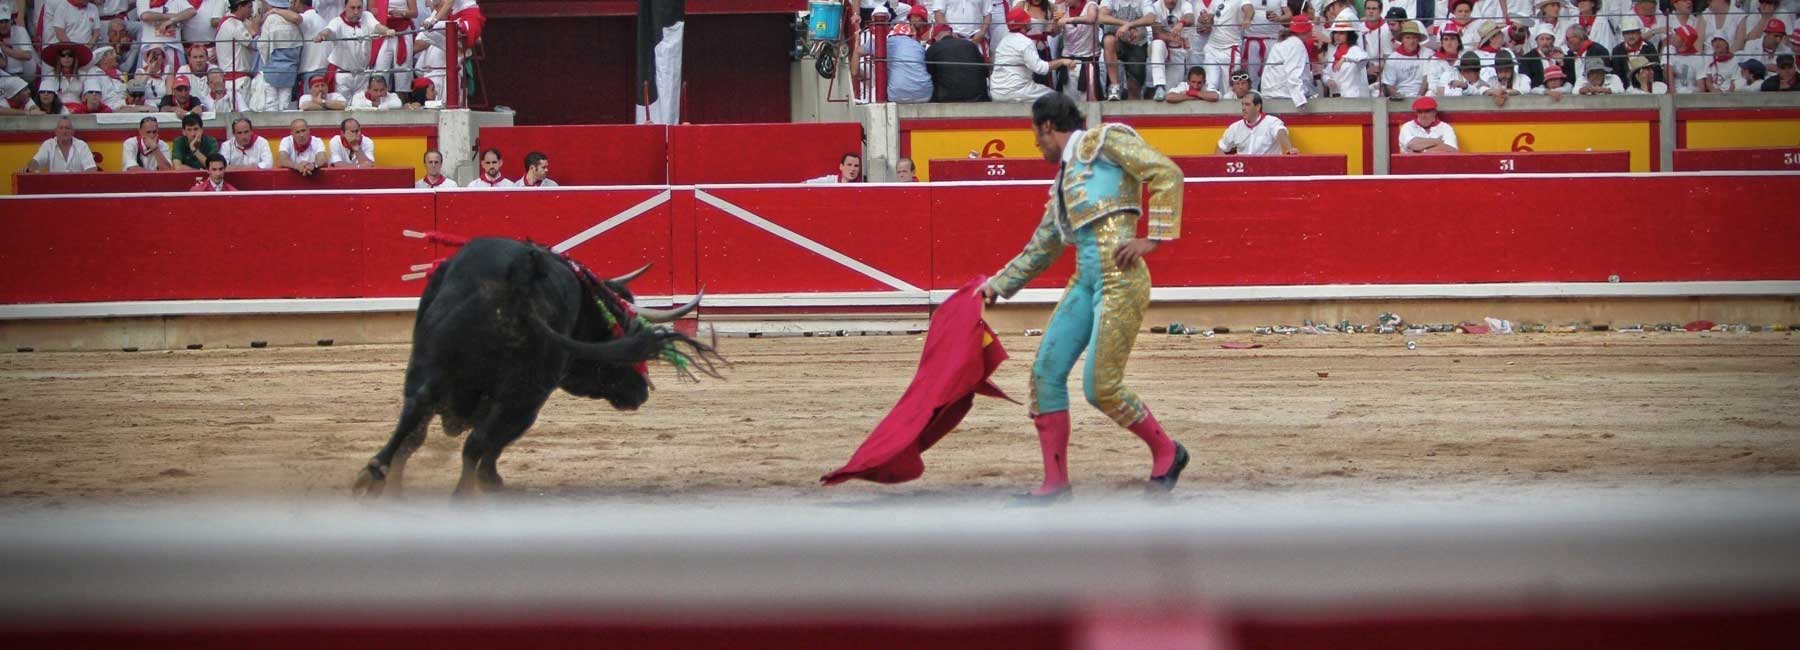 Bullfighting Ethics